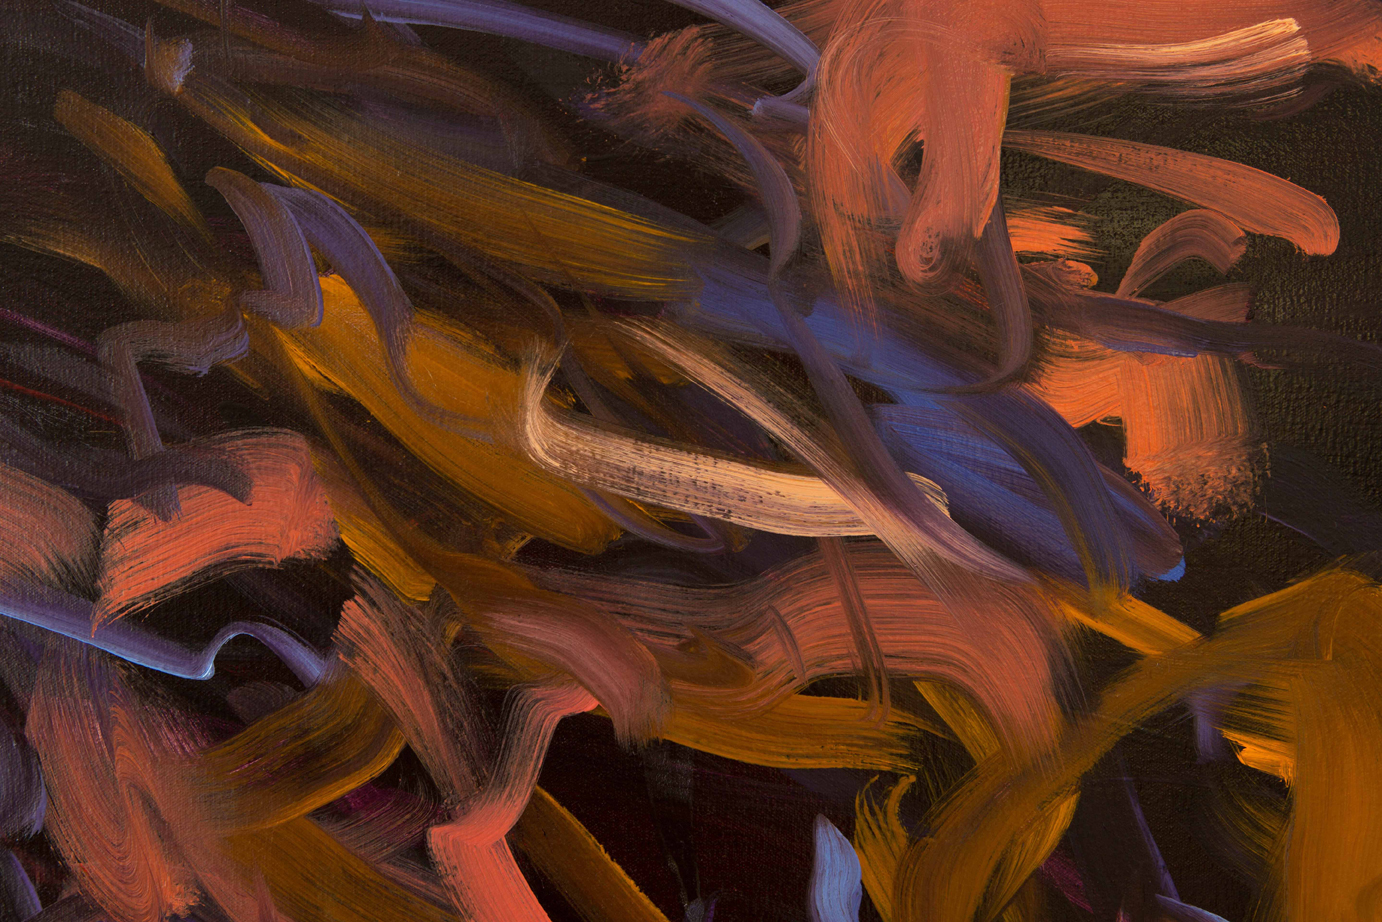  Untitled no 1  (dark ground)  detail  2015  oil on canvas  146 x 186 cm 